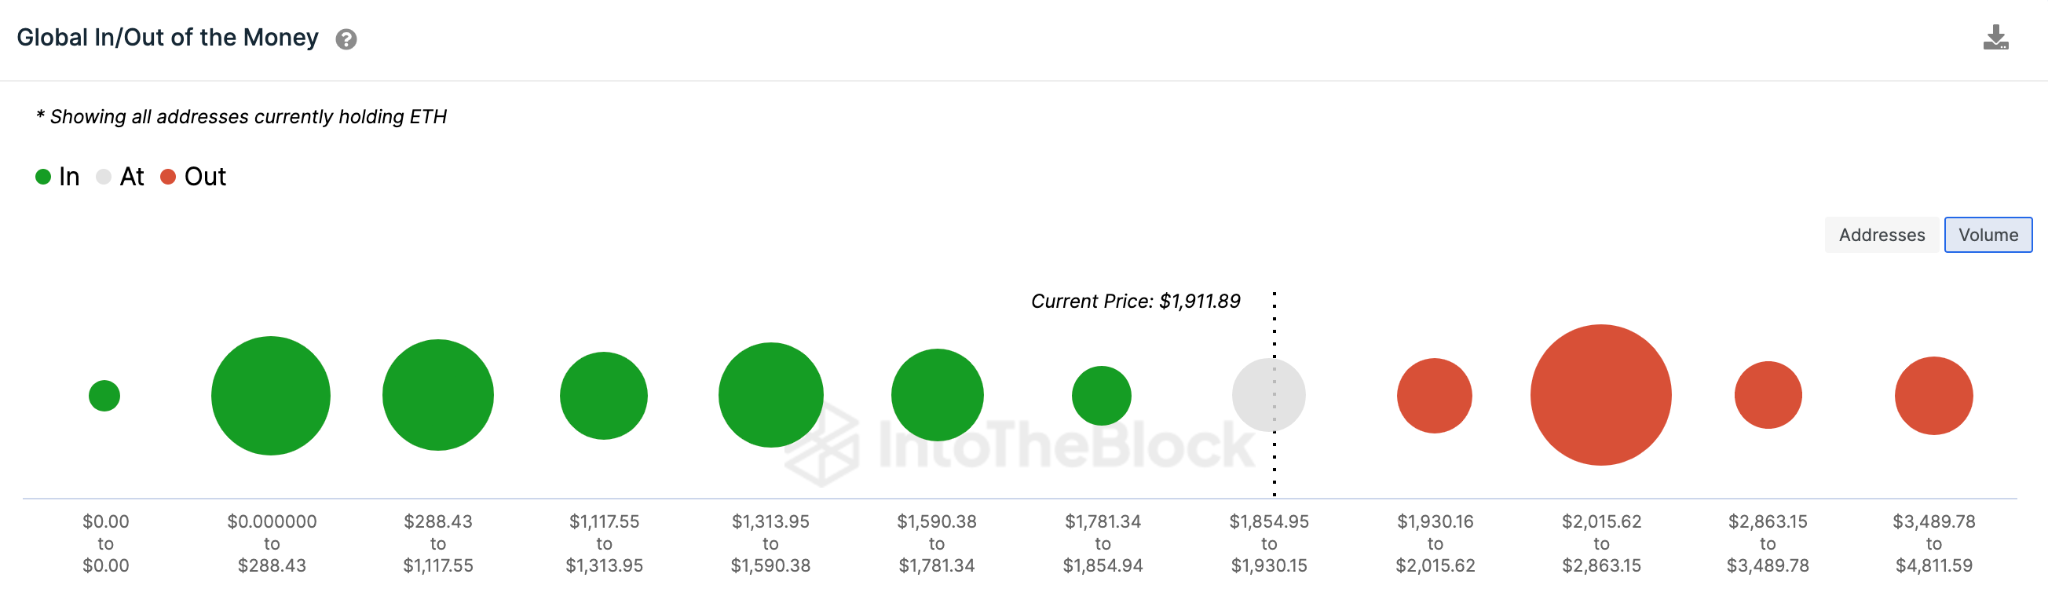 Predicción de precio de Ethereum (ETH) $ 2,400 Mayo de 2023: datos de GIOM.